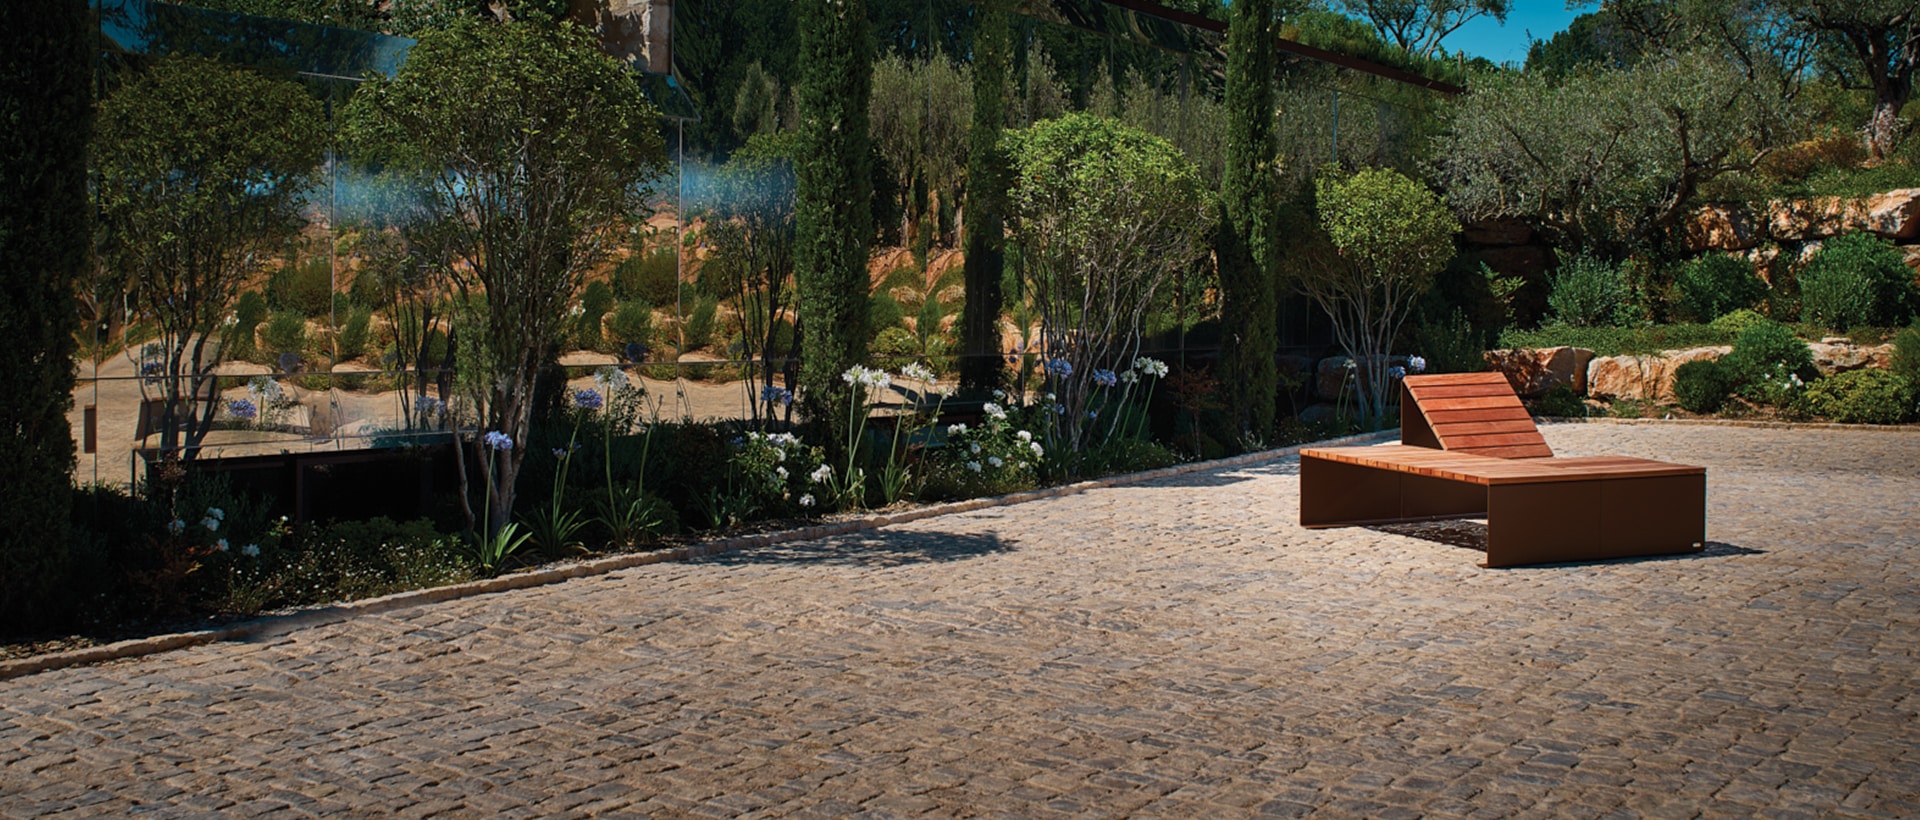 Bain de soleil modulaire ABSOLUT pour espace public en acier et bois éco-conçu par CYRIA fabricant de mobilier urbain